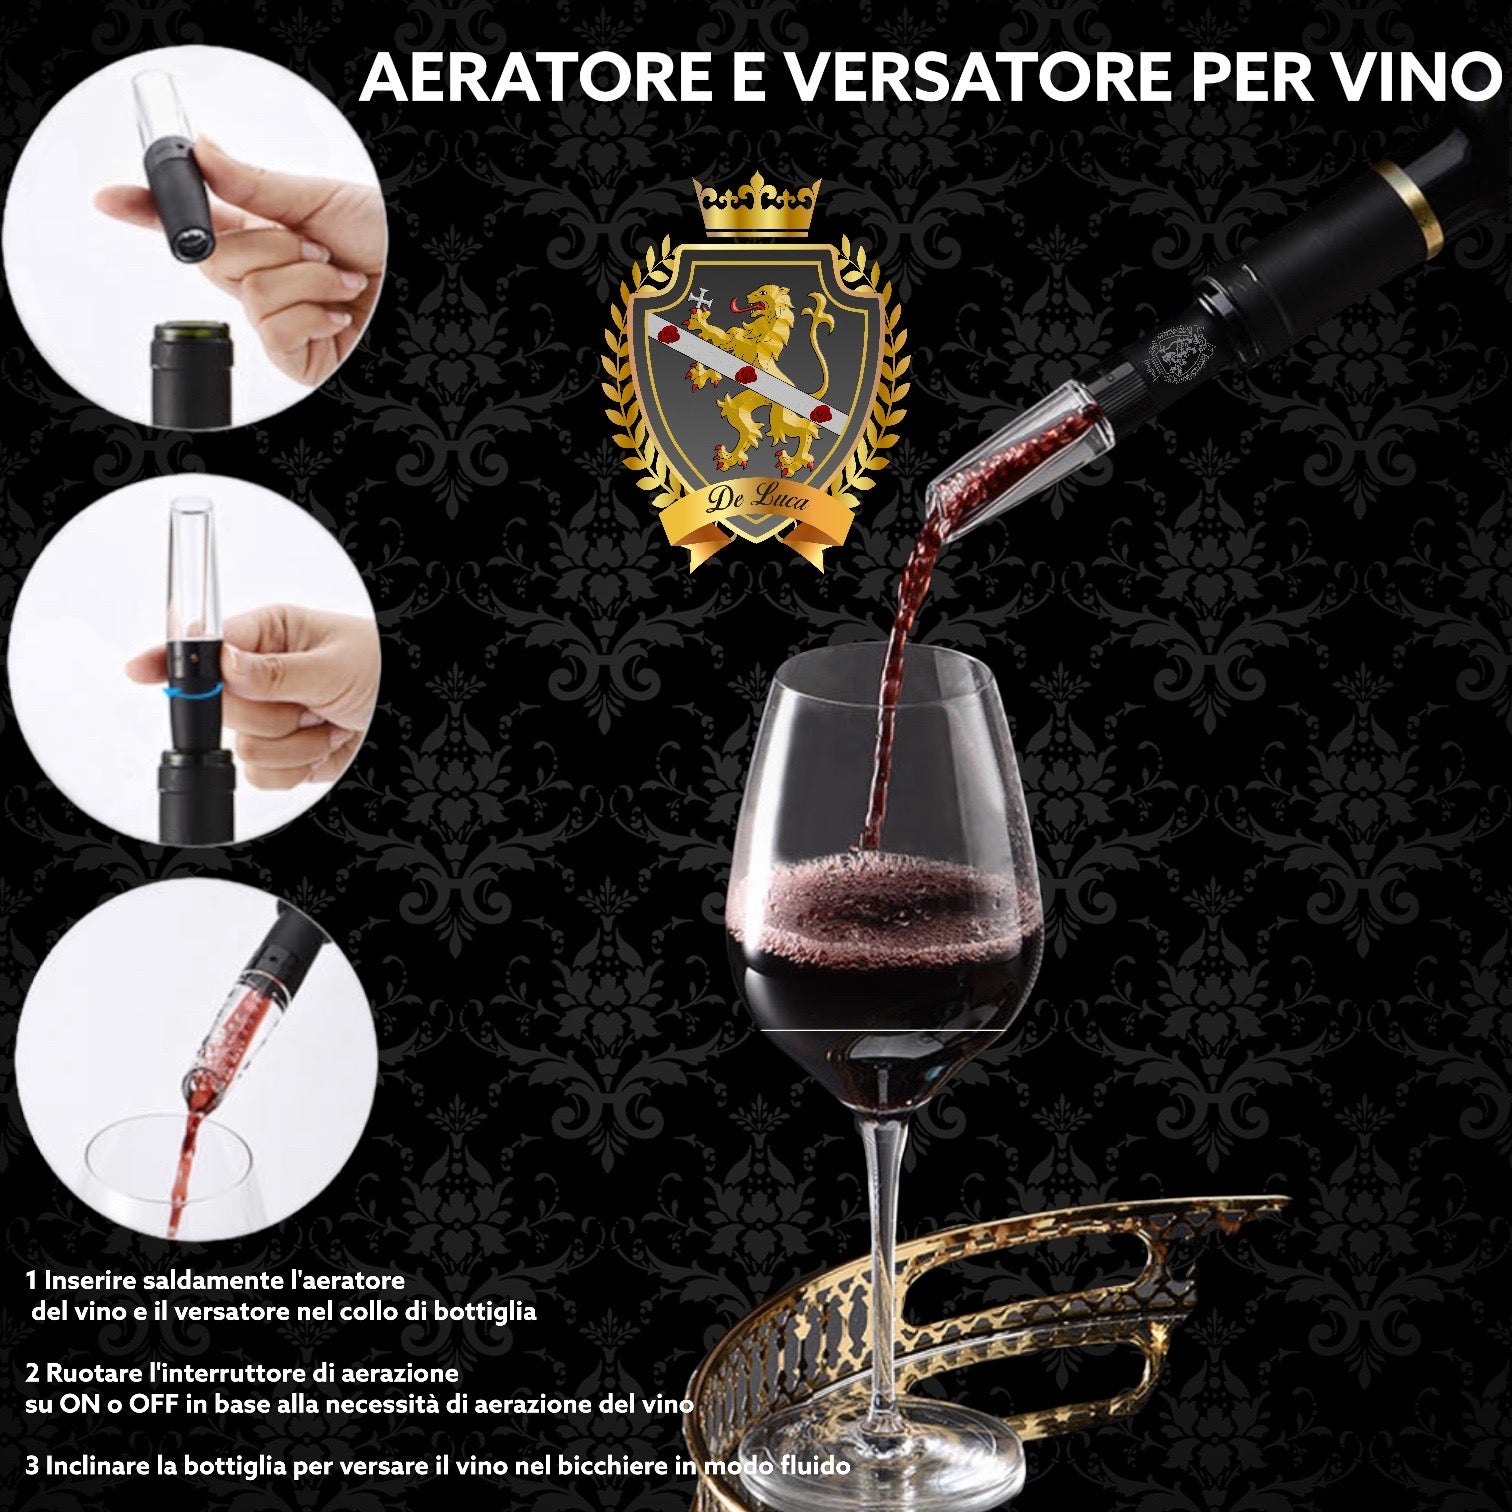 Aeratore e vesatore per vino De Luca – De Luca